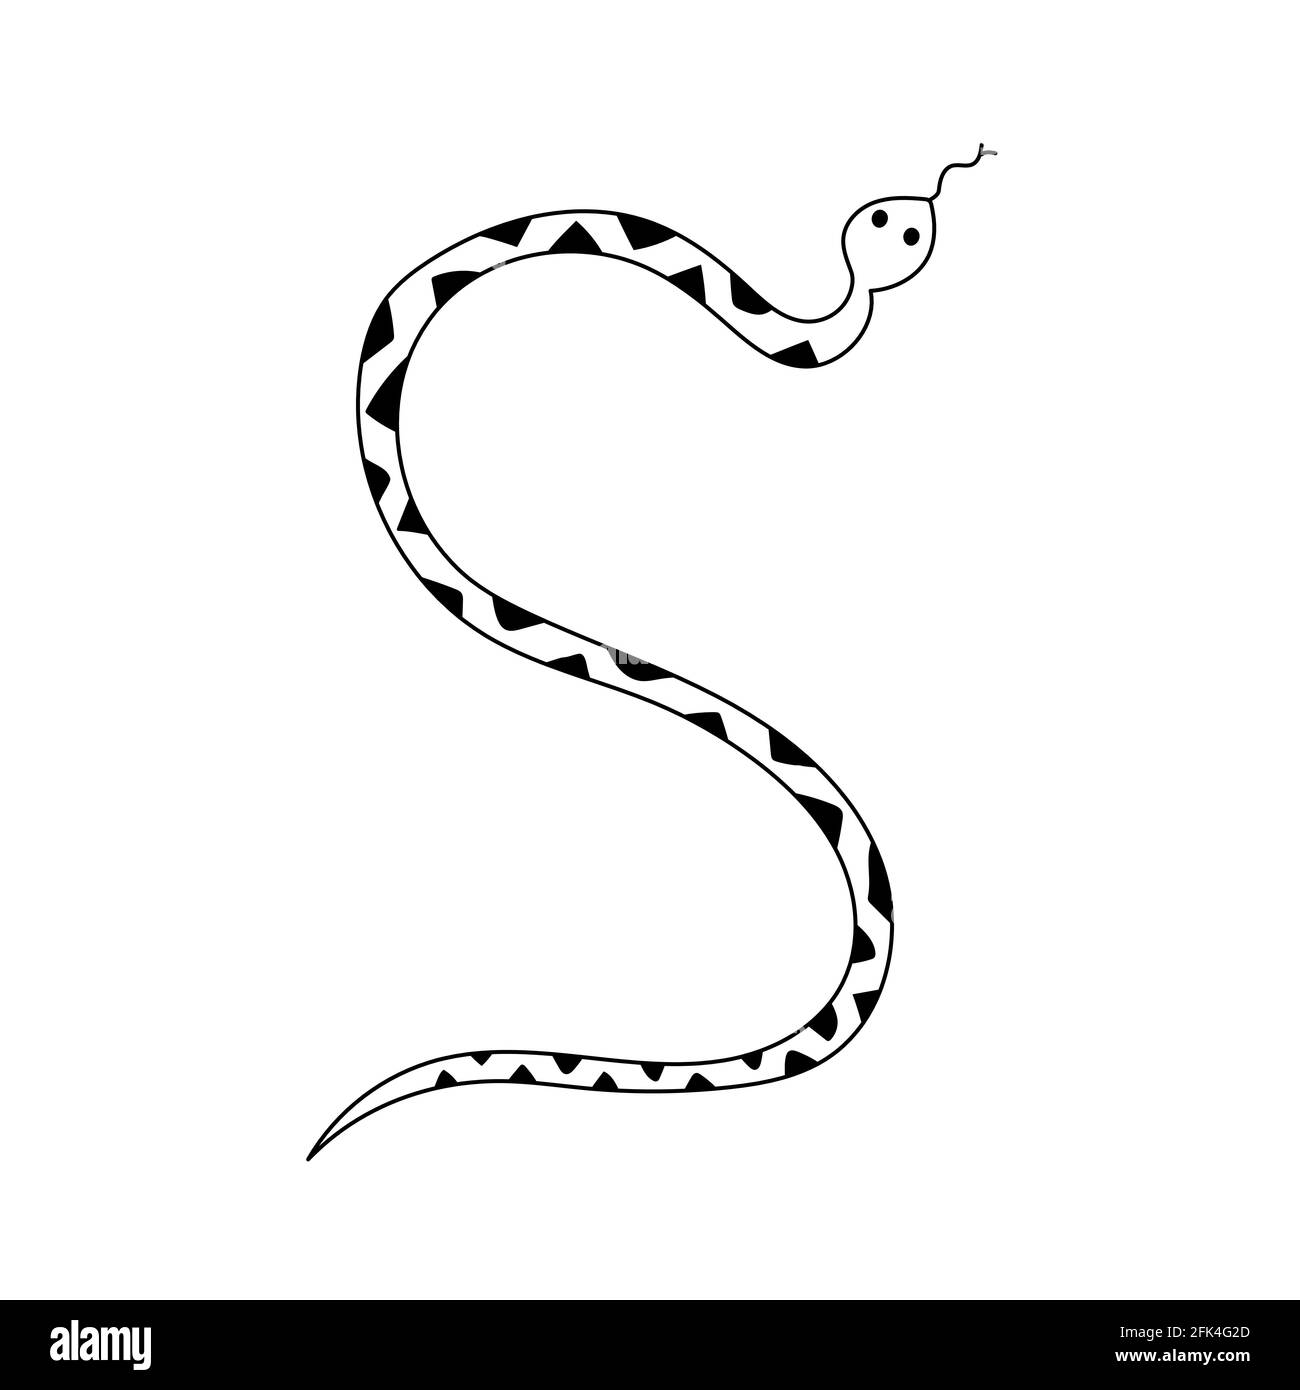 Serpent dangereux avec un motif géométrique sur sa peau. Illustration vectorielle Doodle dessinée à la main Illustration de Vecteur